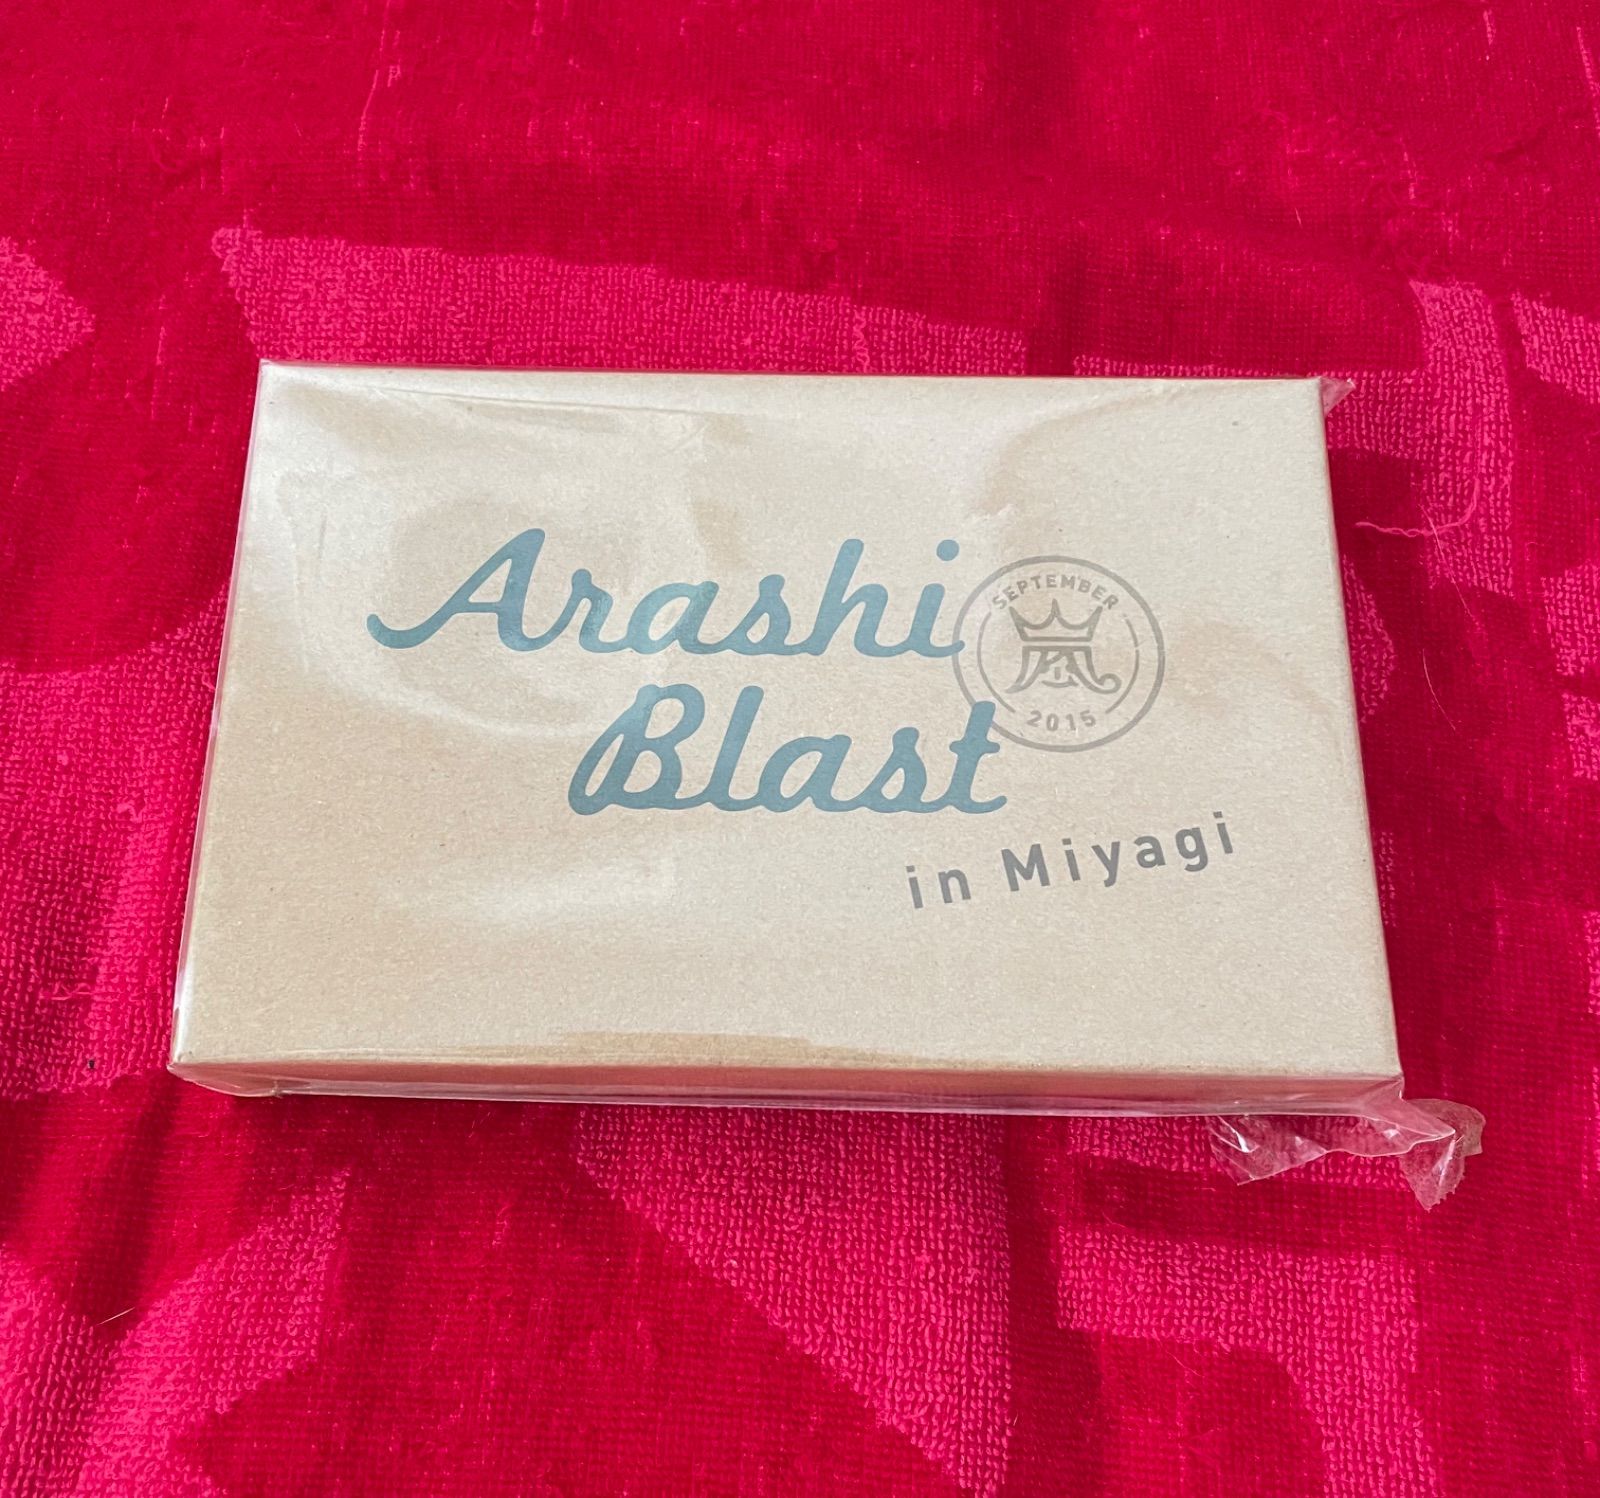 嵐/スプーンセット」ARASHI Blast in Miyagi グッズ - メルカリ